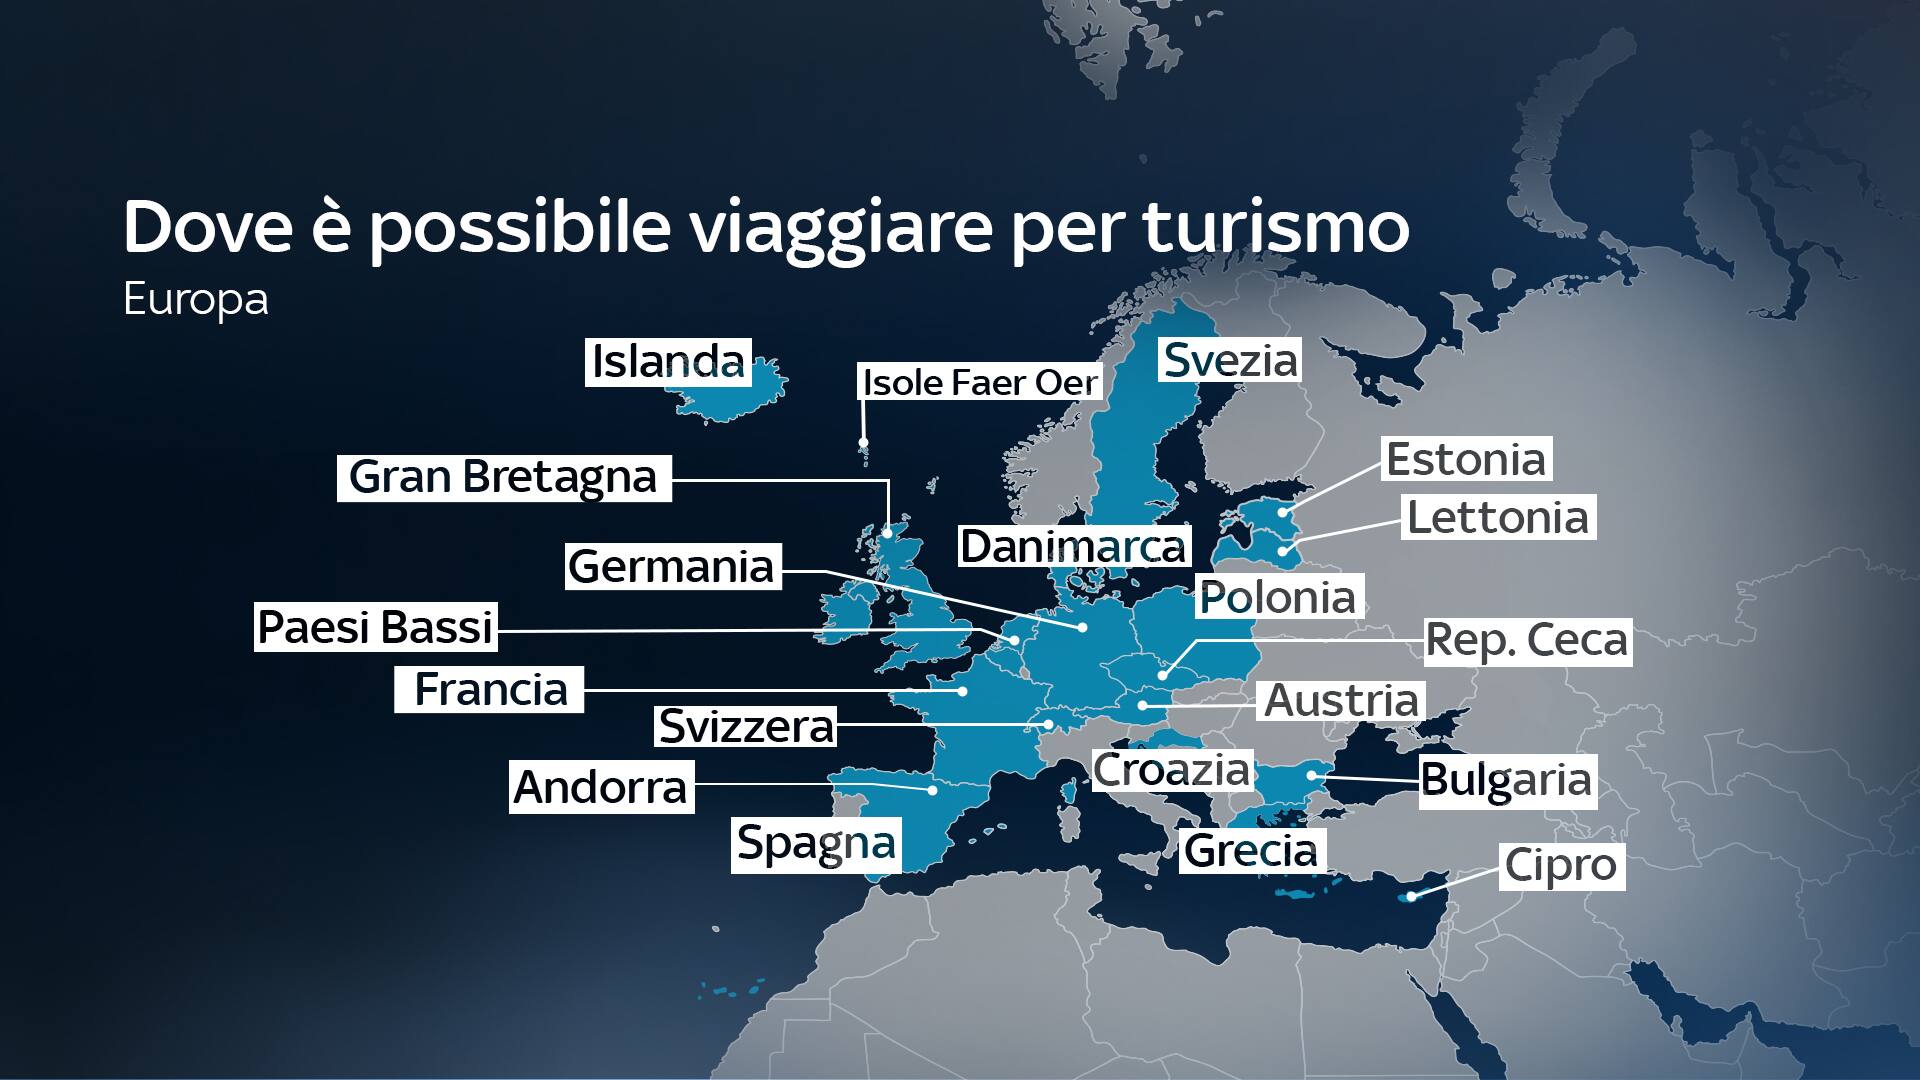 Nell'immagine una mappa dell'Europa con i Paesi dove è possibile andare per turismo